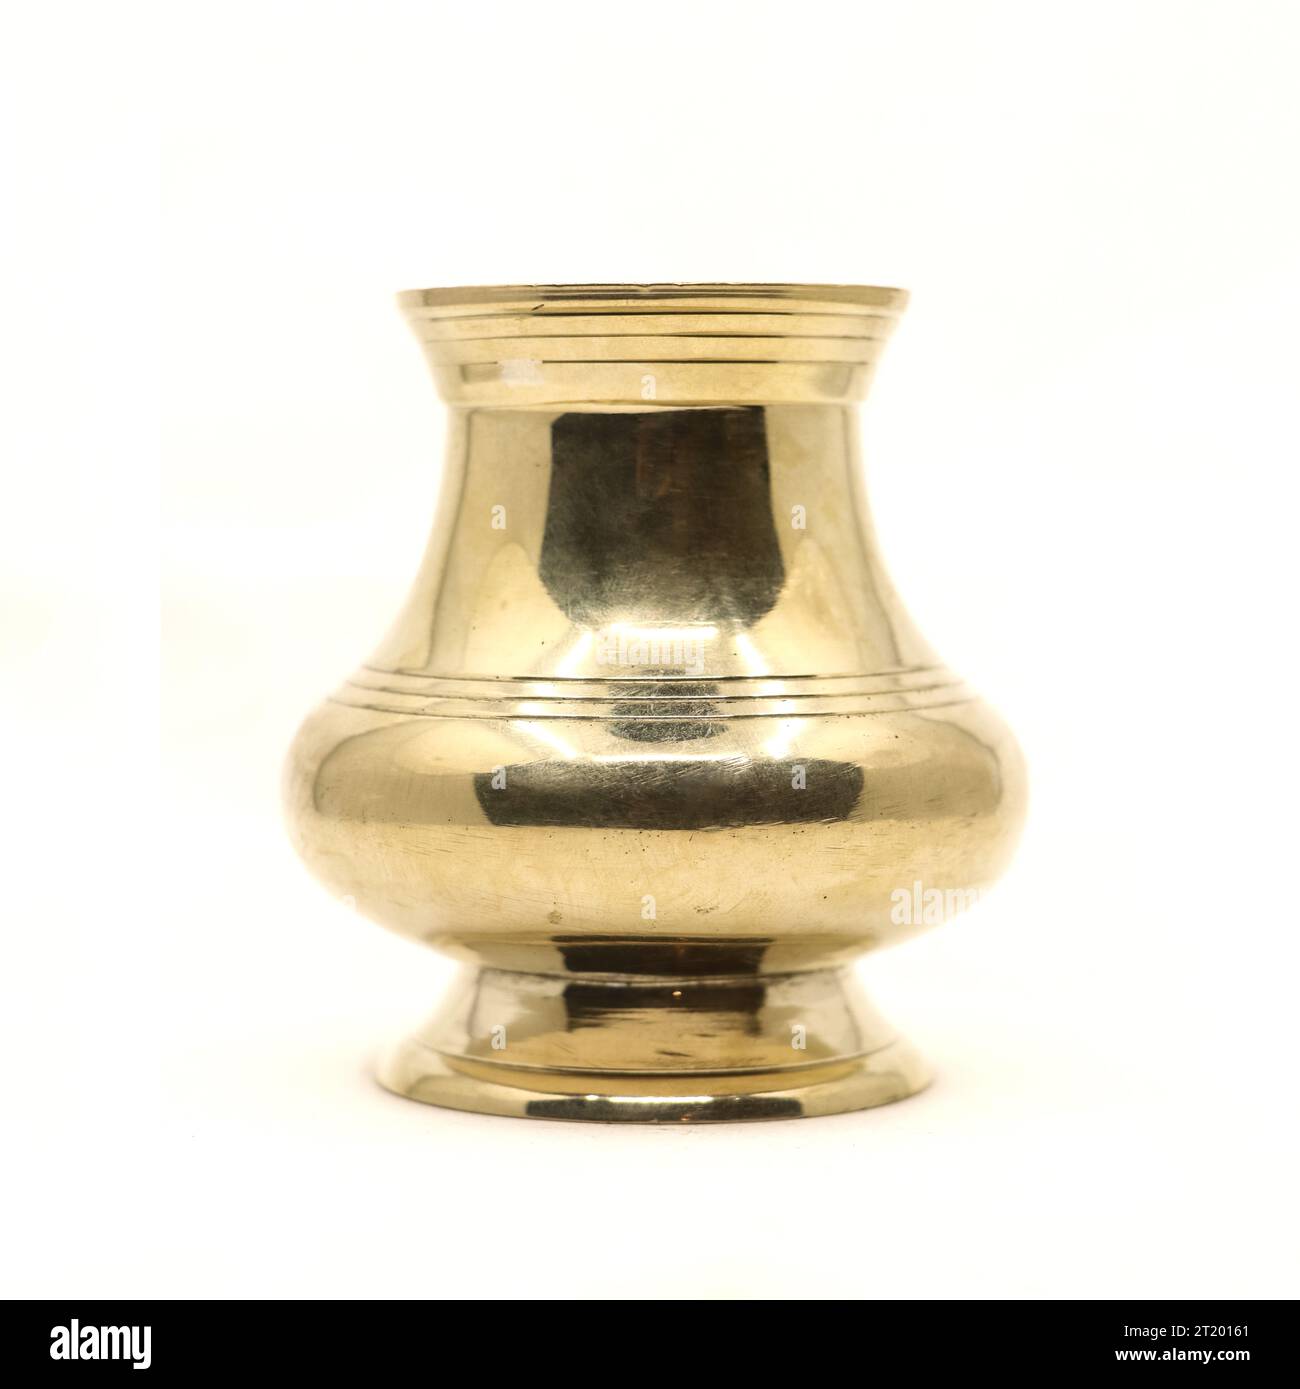 un recipiente di ottone indiano dorato pulito utilizzato come vaso d'acqua per i rituali tradizionali durante le feste religiose indù isolato su sfondo bianco Foto Stock